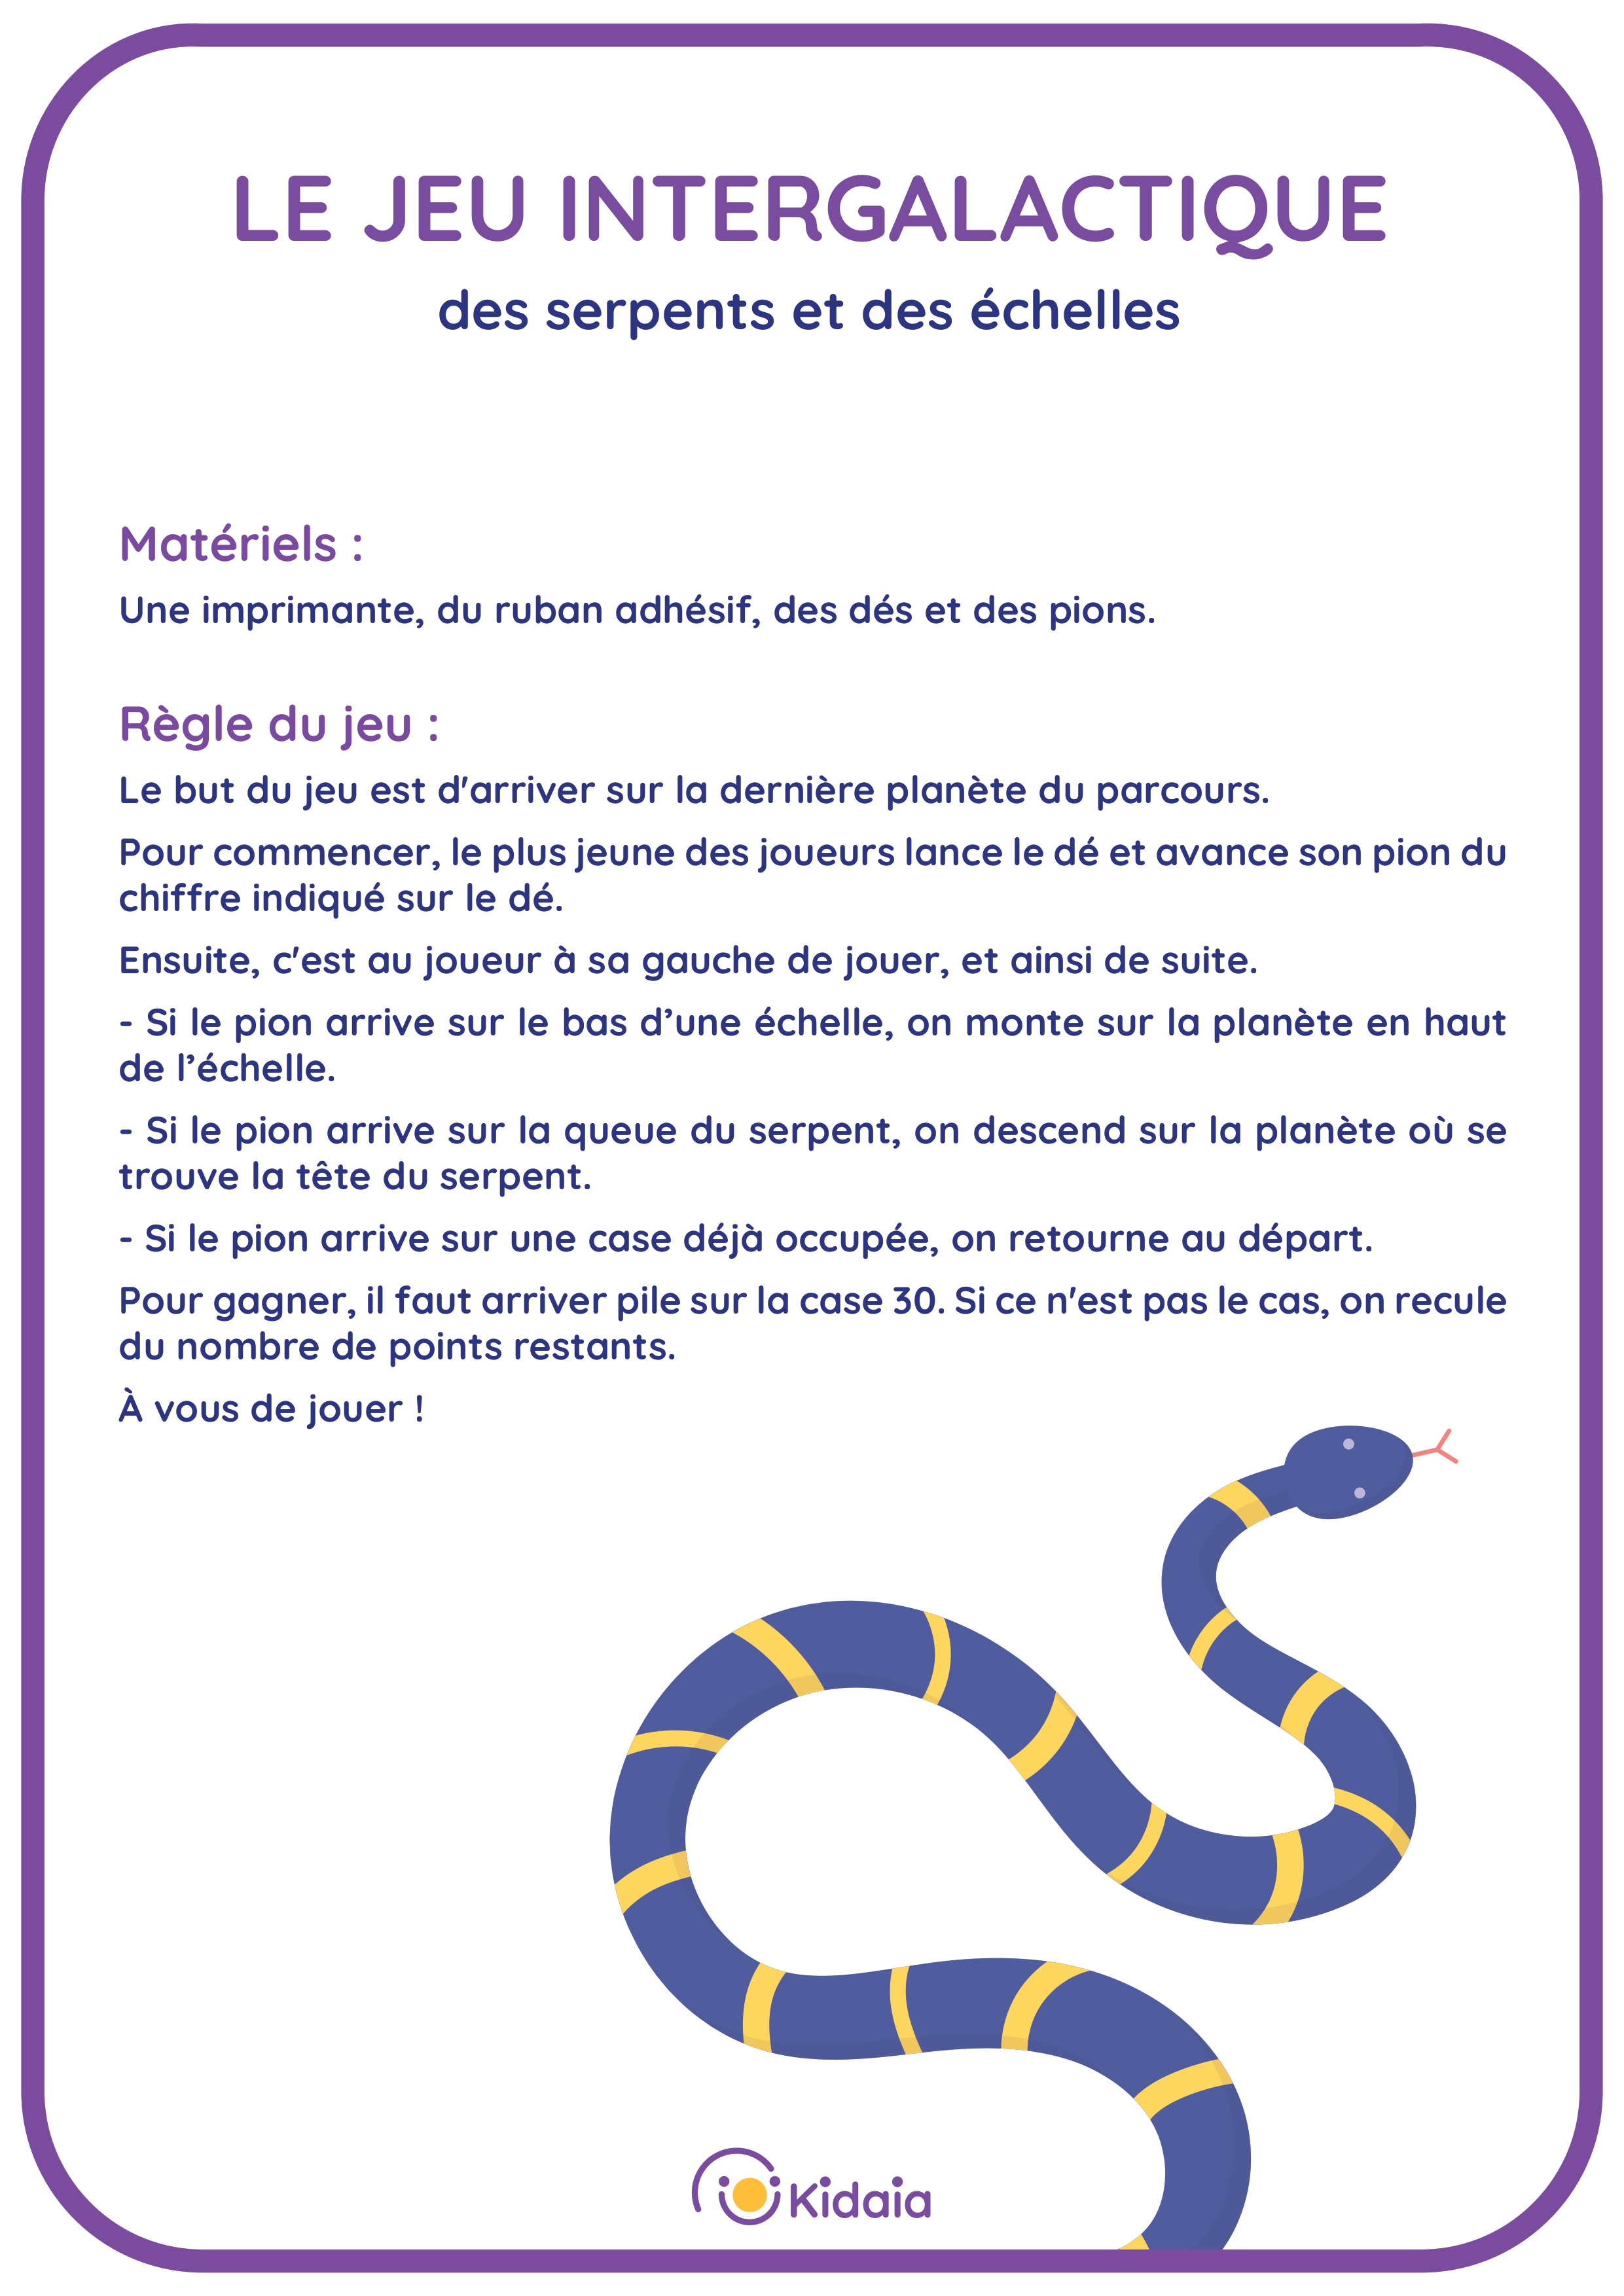 Le jeu des serpents et des échelles - KIDAIA_page-0002